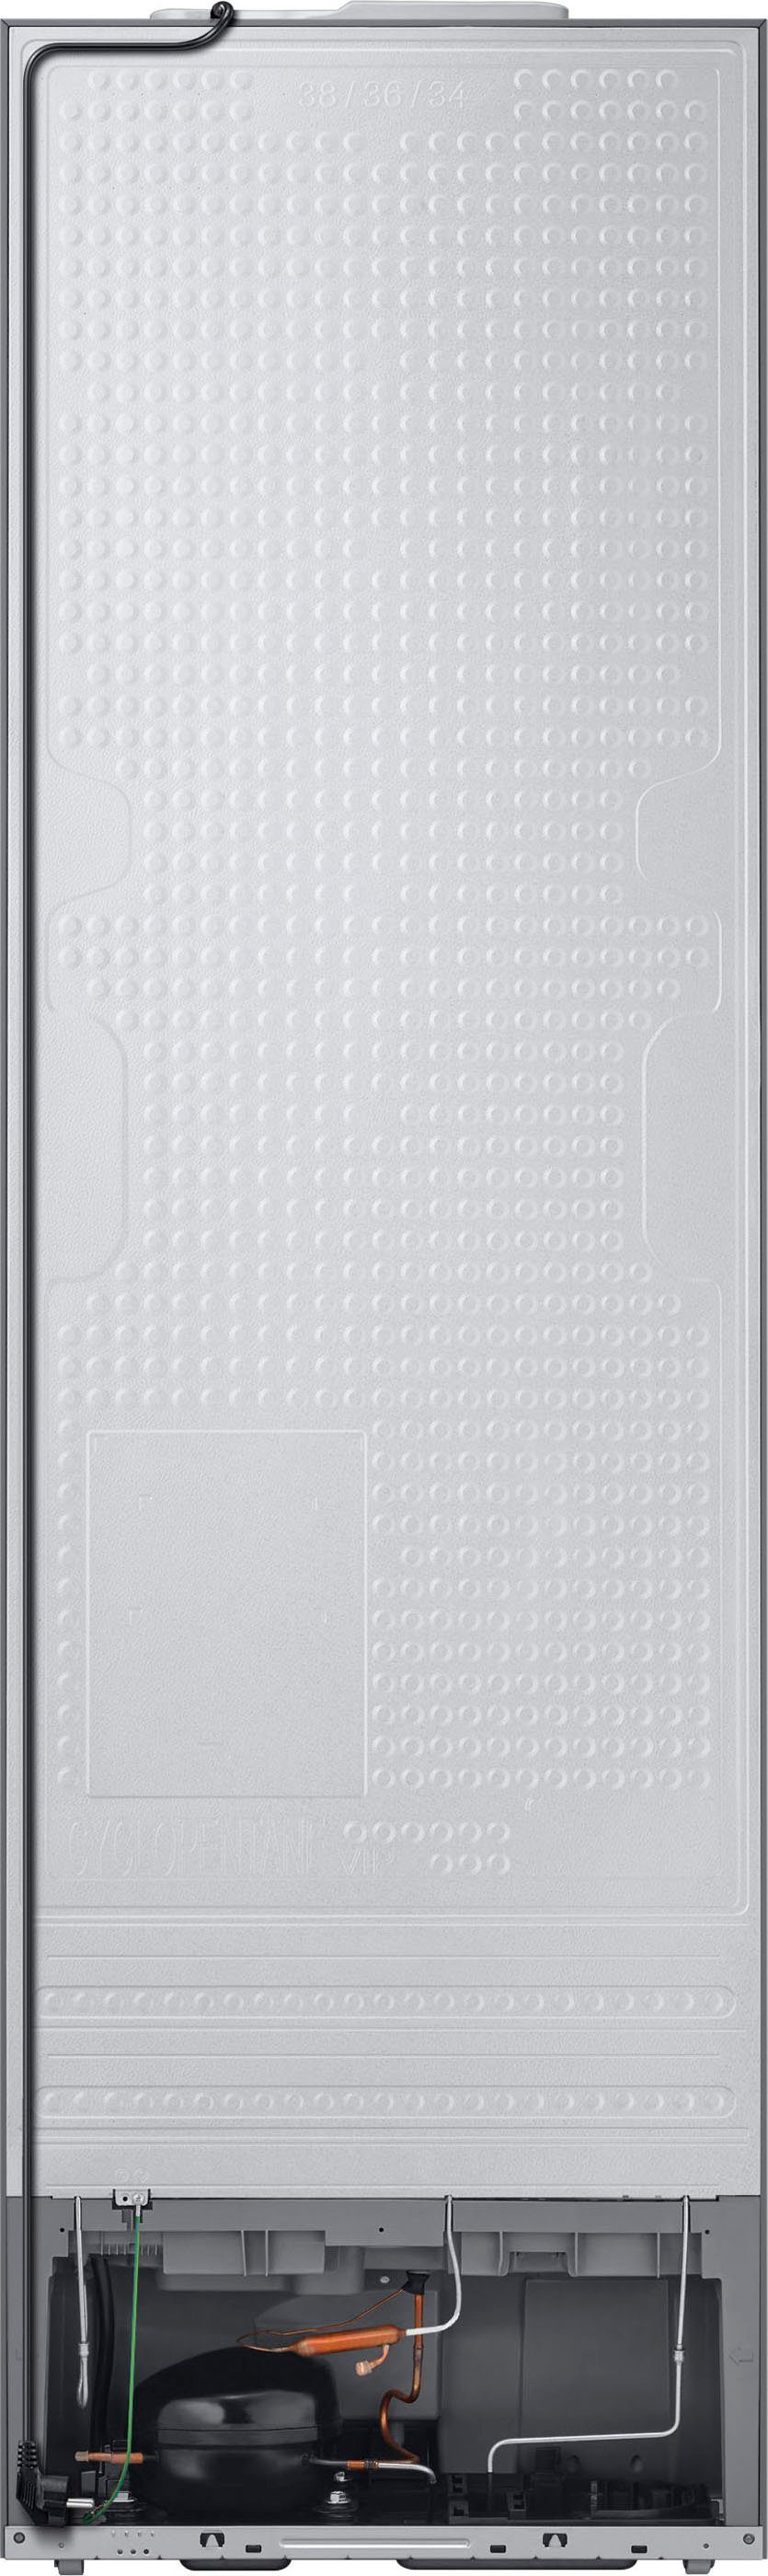 Samsung Kühl-/Gefrierkombination Bespoke 185,3 cm RL34C6B2C41, 59,5 cm breit hoch